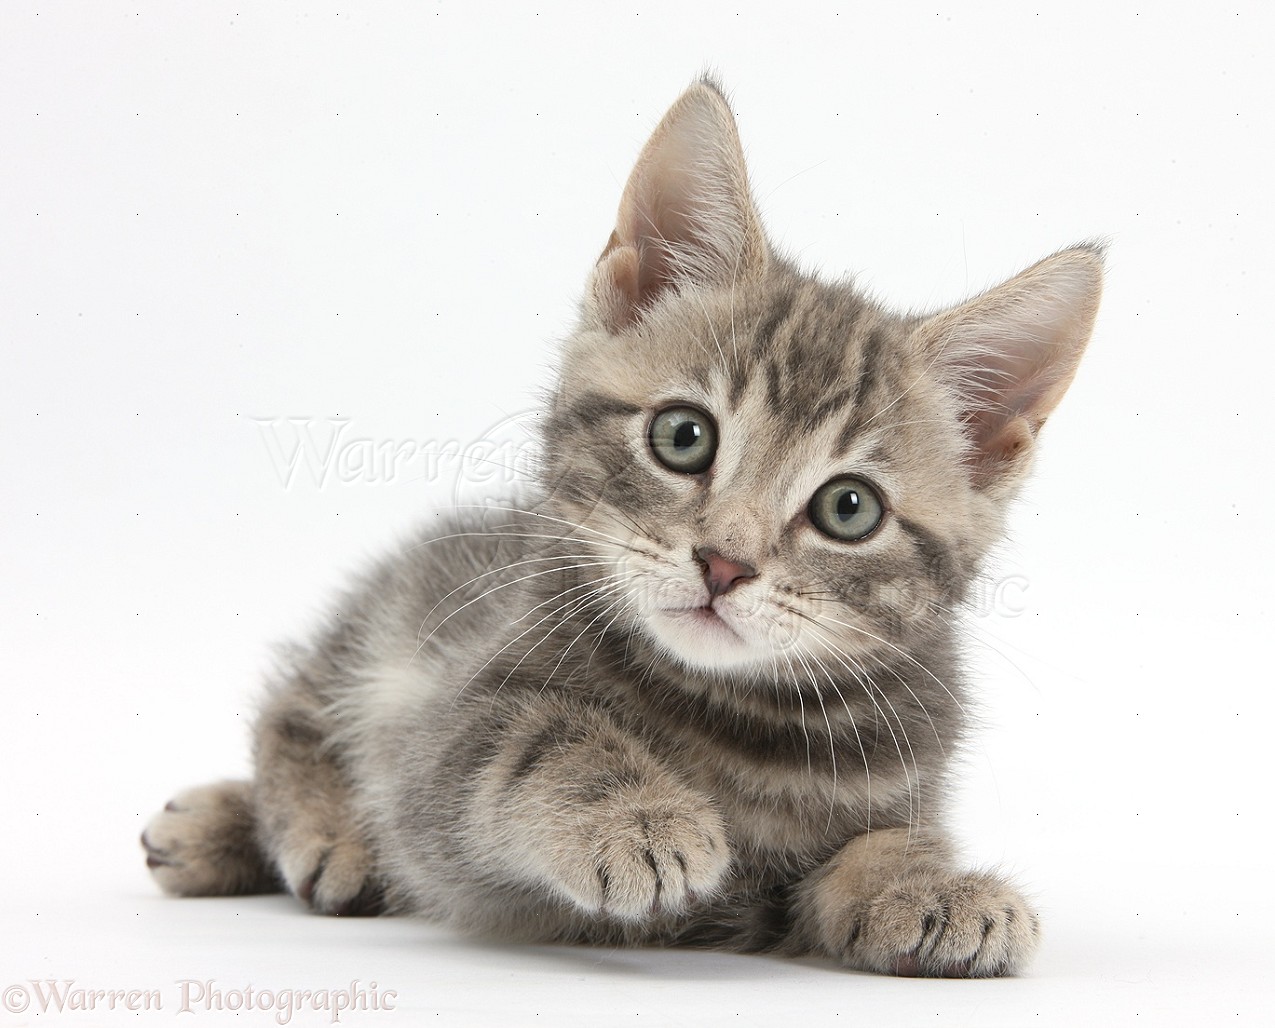 Tabby Kitten Image For Advertising Wp36522